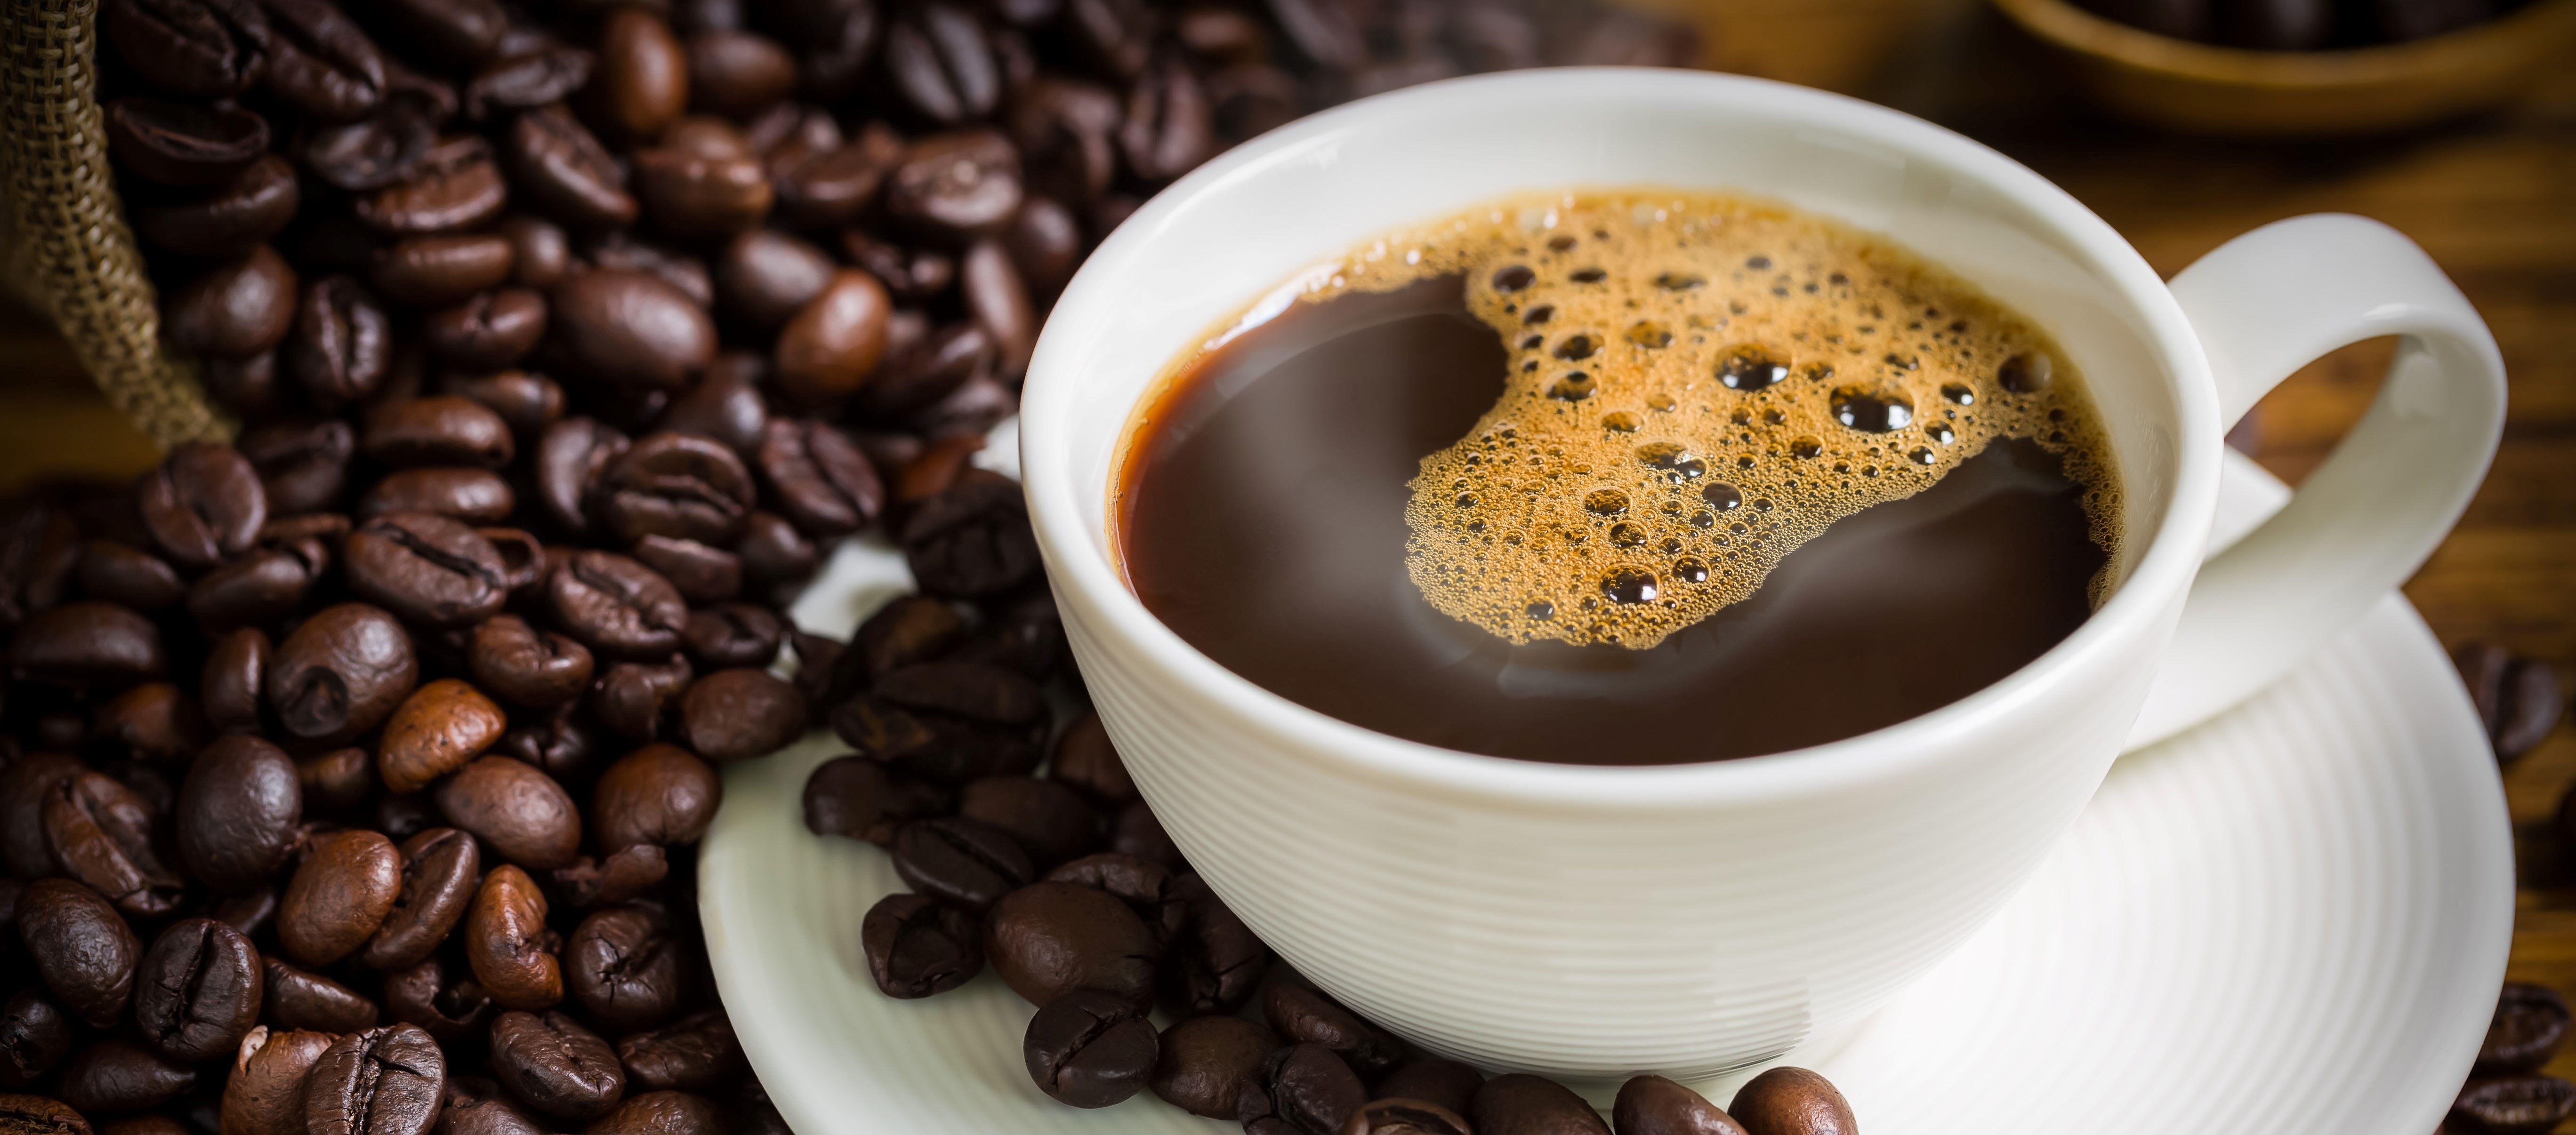 Silány minőségű kávékeverékekkel árasztják el a világpiacot